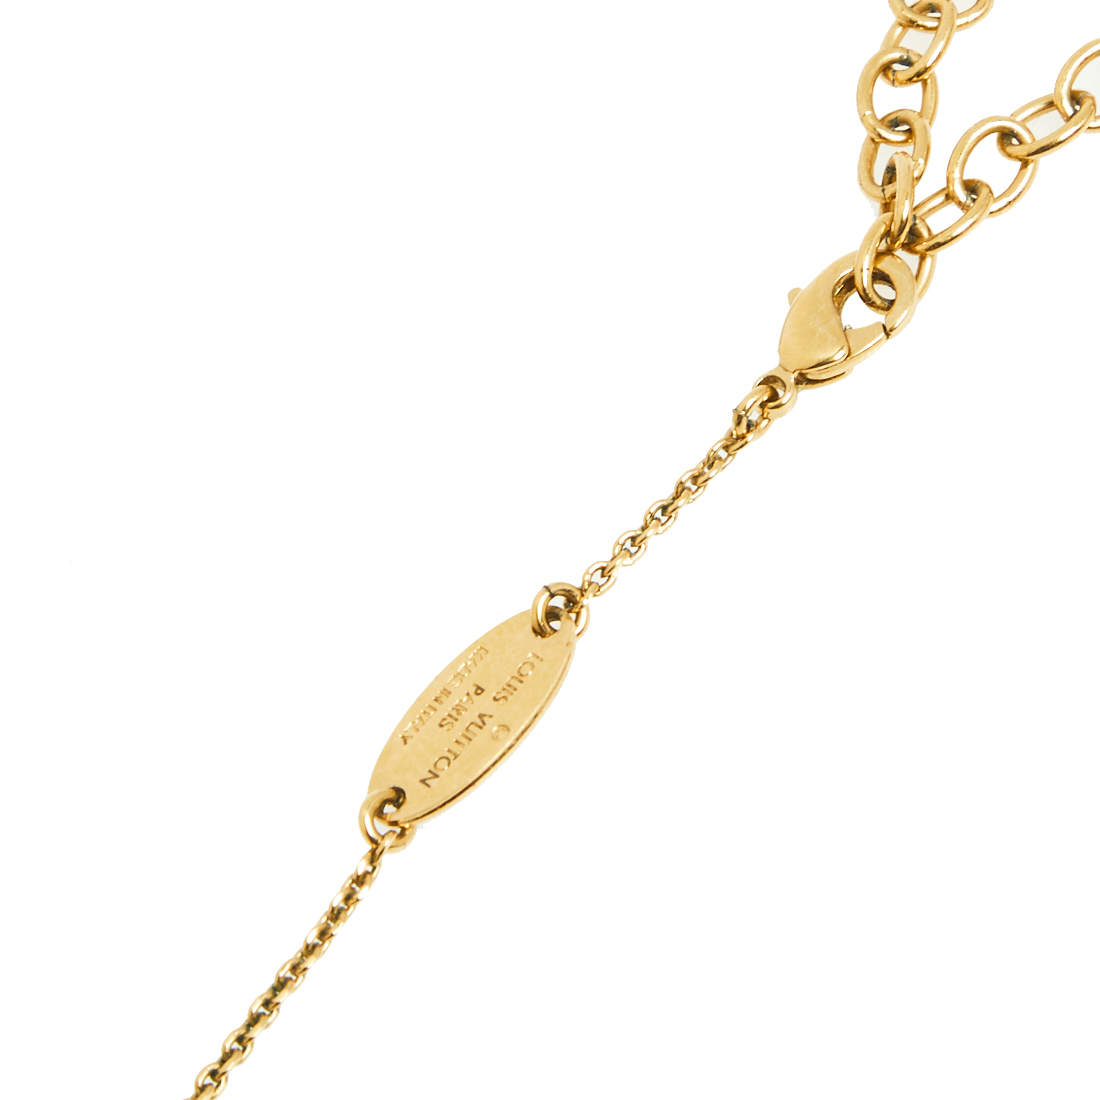 Louis Vuitton Letter N LV & Me Necklace - Gold-Tone Metal Pendant Necklace,  Necklaces - LOU155366